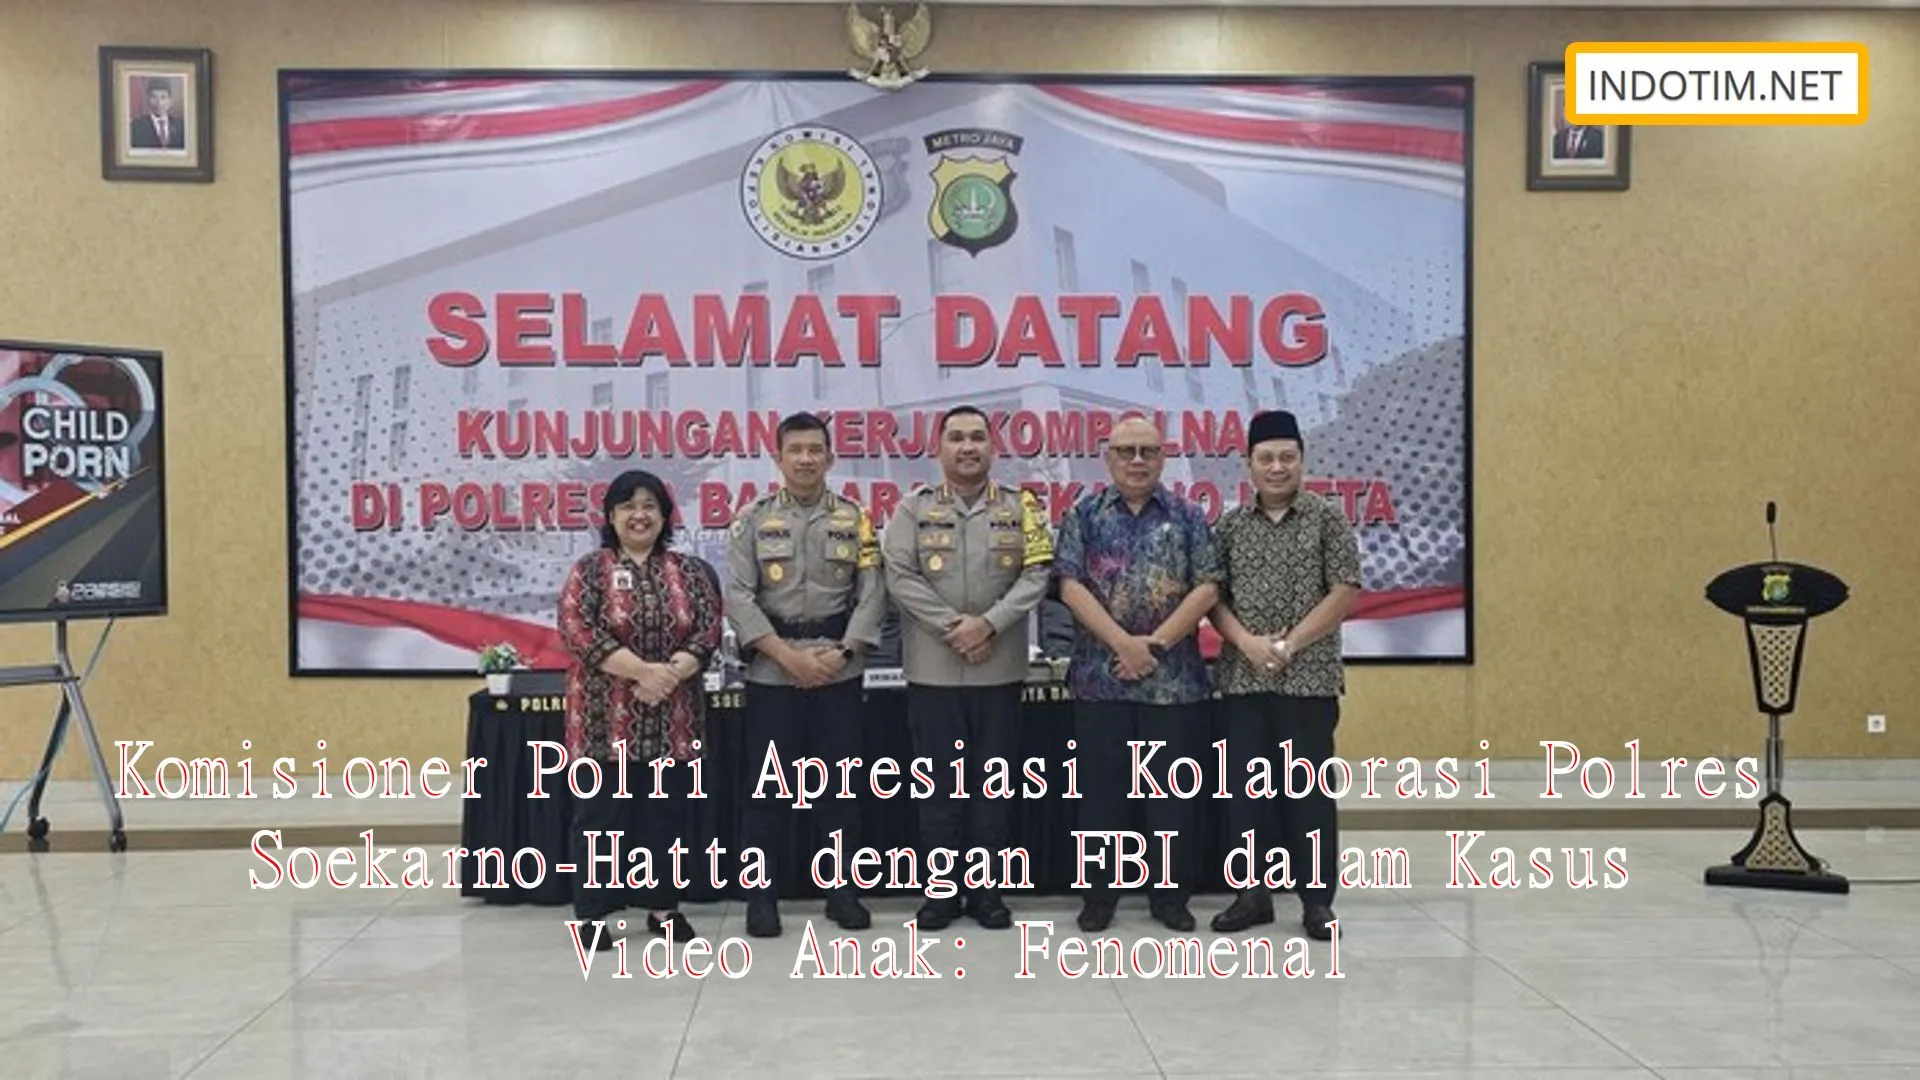 Komisioner Polri Apresiasi Kolaborasi Polres Soekarno-Hatta dengan FBI dalam Kasus Video Anak: Fenomenal